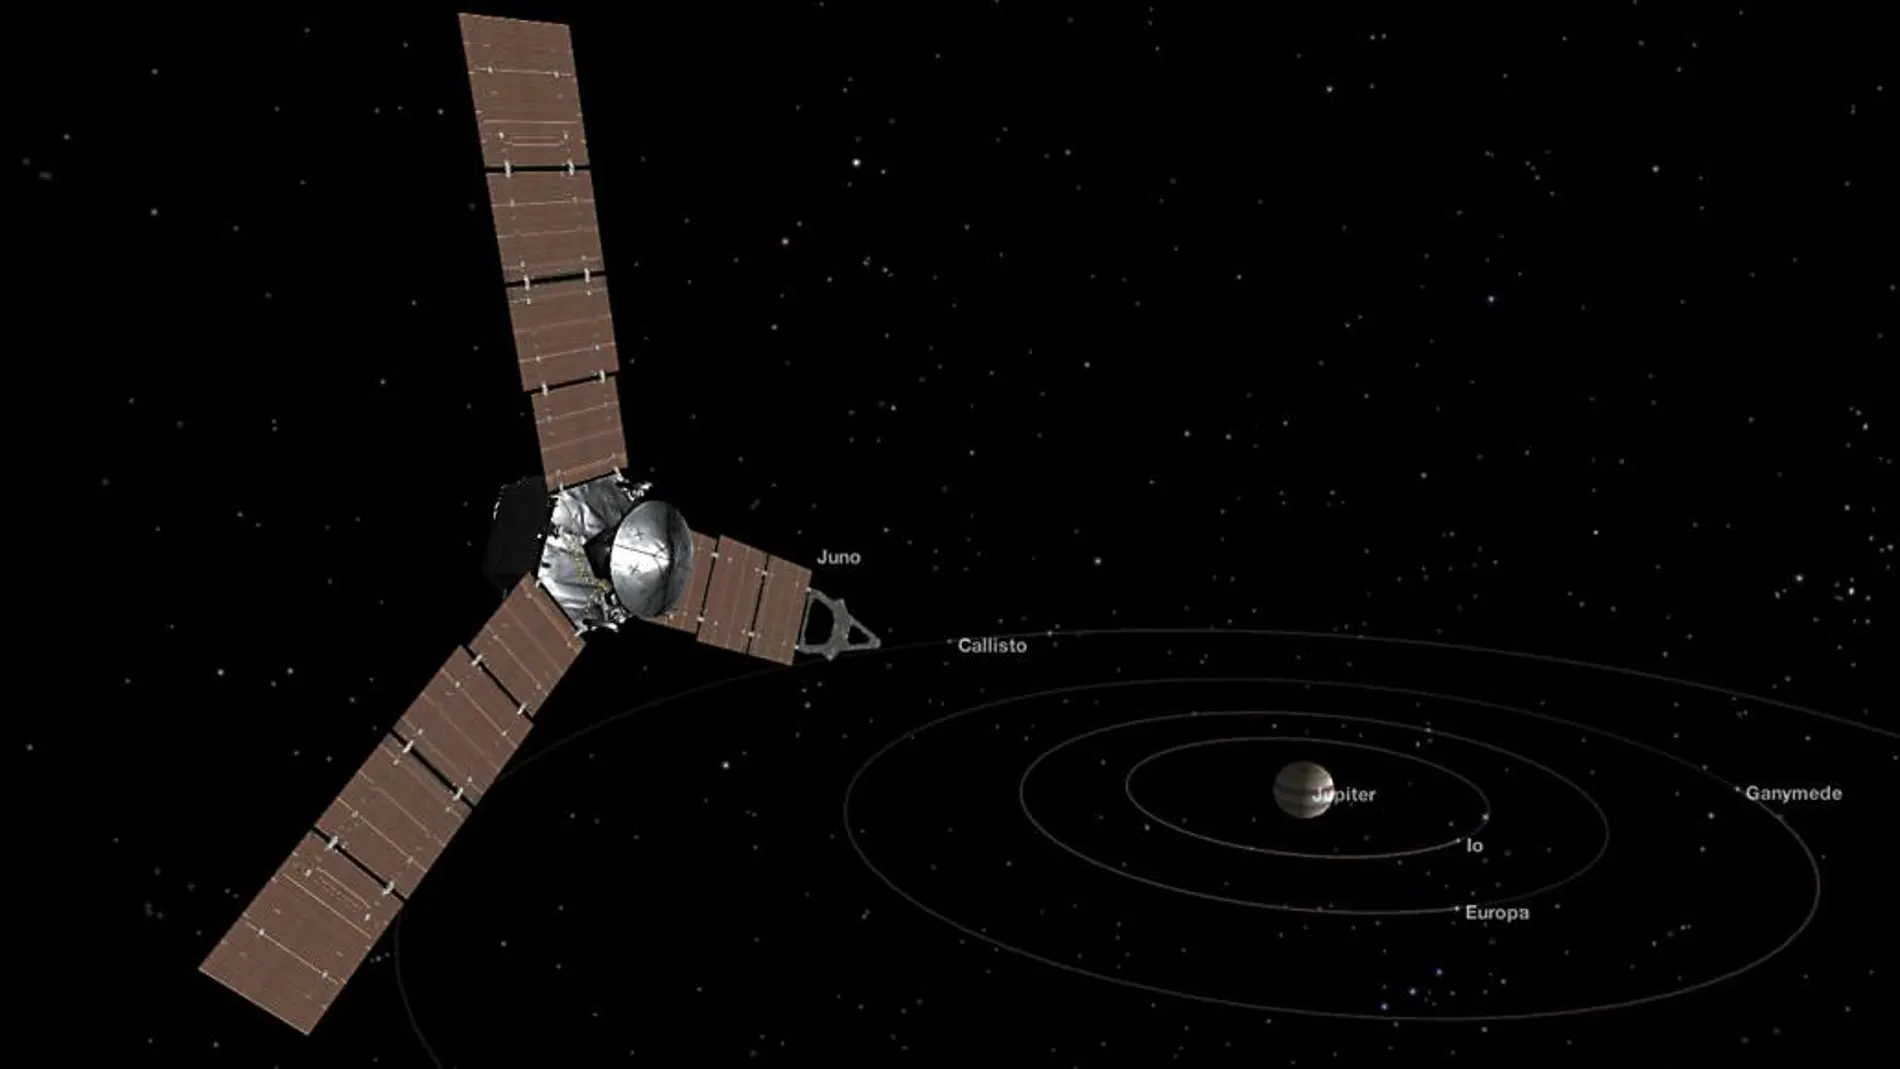 La sonda Juno llega el lunes a la órbita de Júpiter tras cinco años de misión